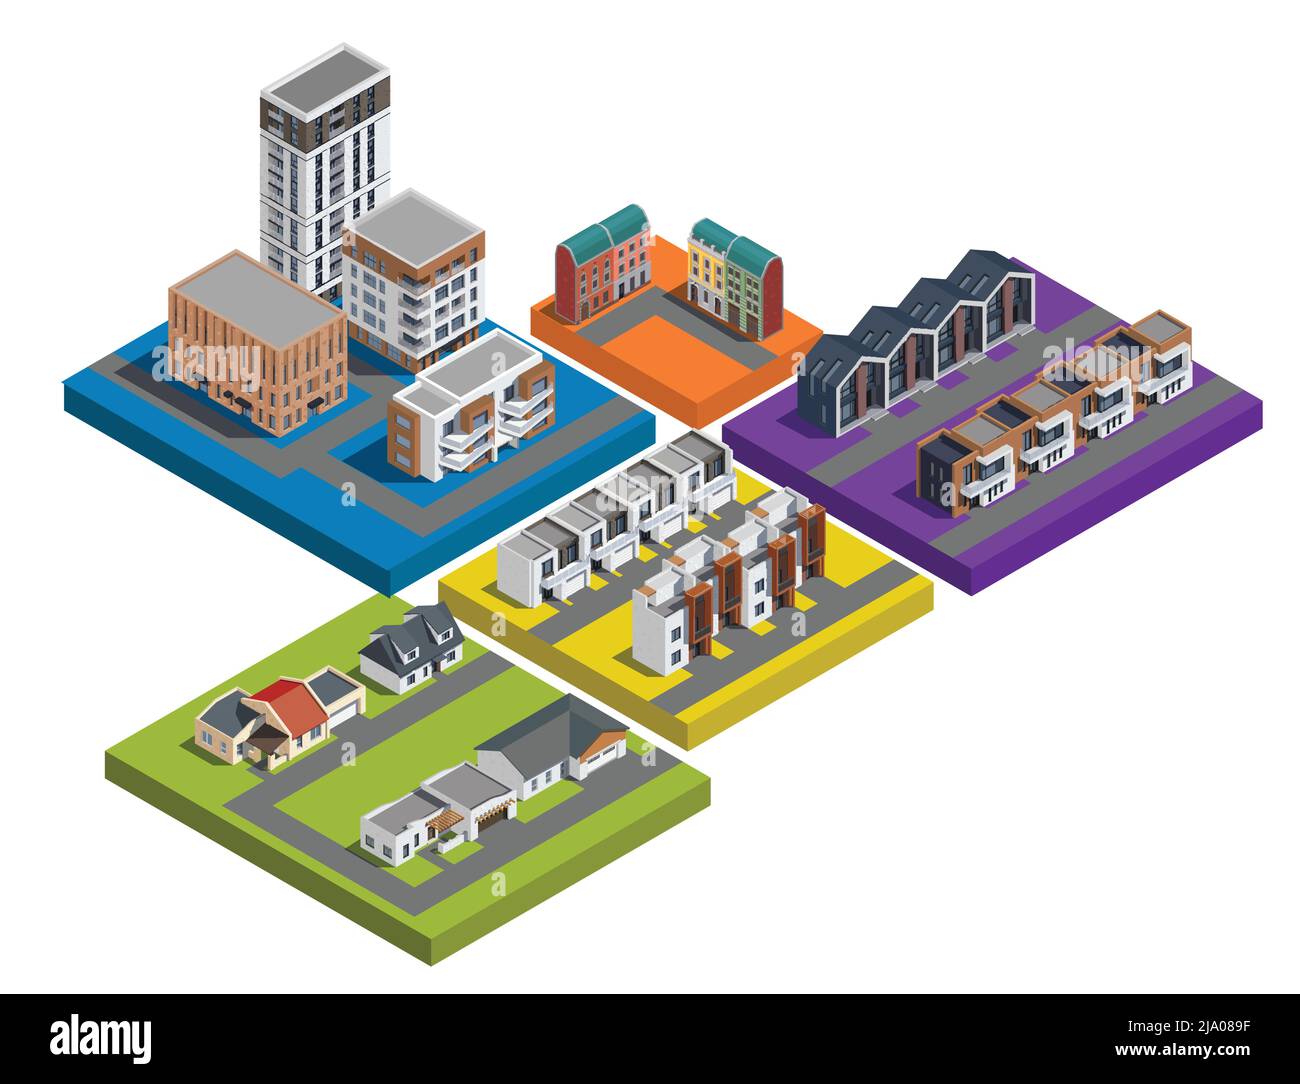 Stadtgebäude in den Vororten sind ein isometrischer Satz von farbenfrohen, isolierten Plattformen mit flachen Apartments und Stadthäusern Stock Vektor